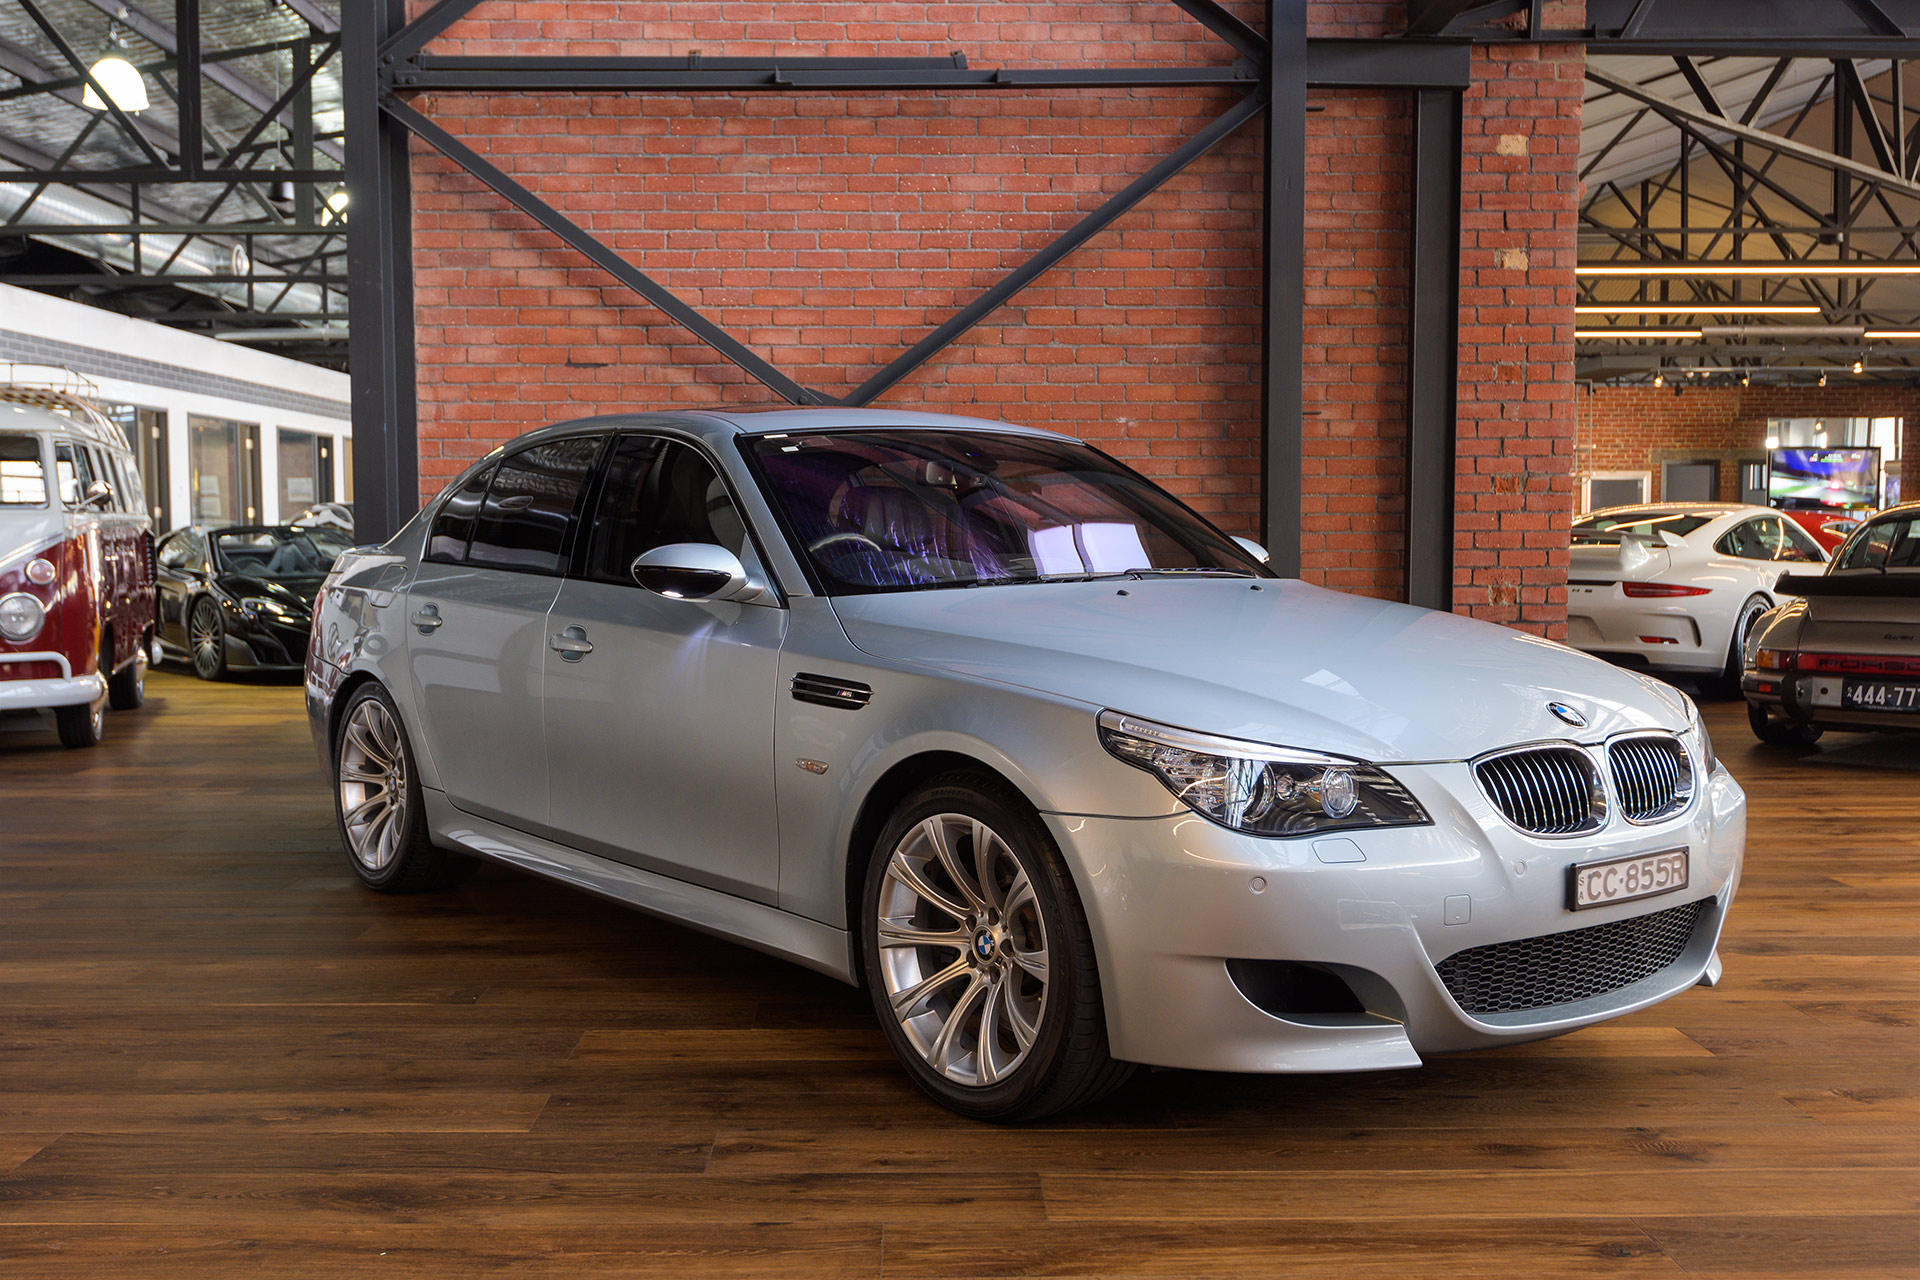 BMW M5 E60 cars for sale in Australia 